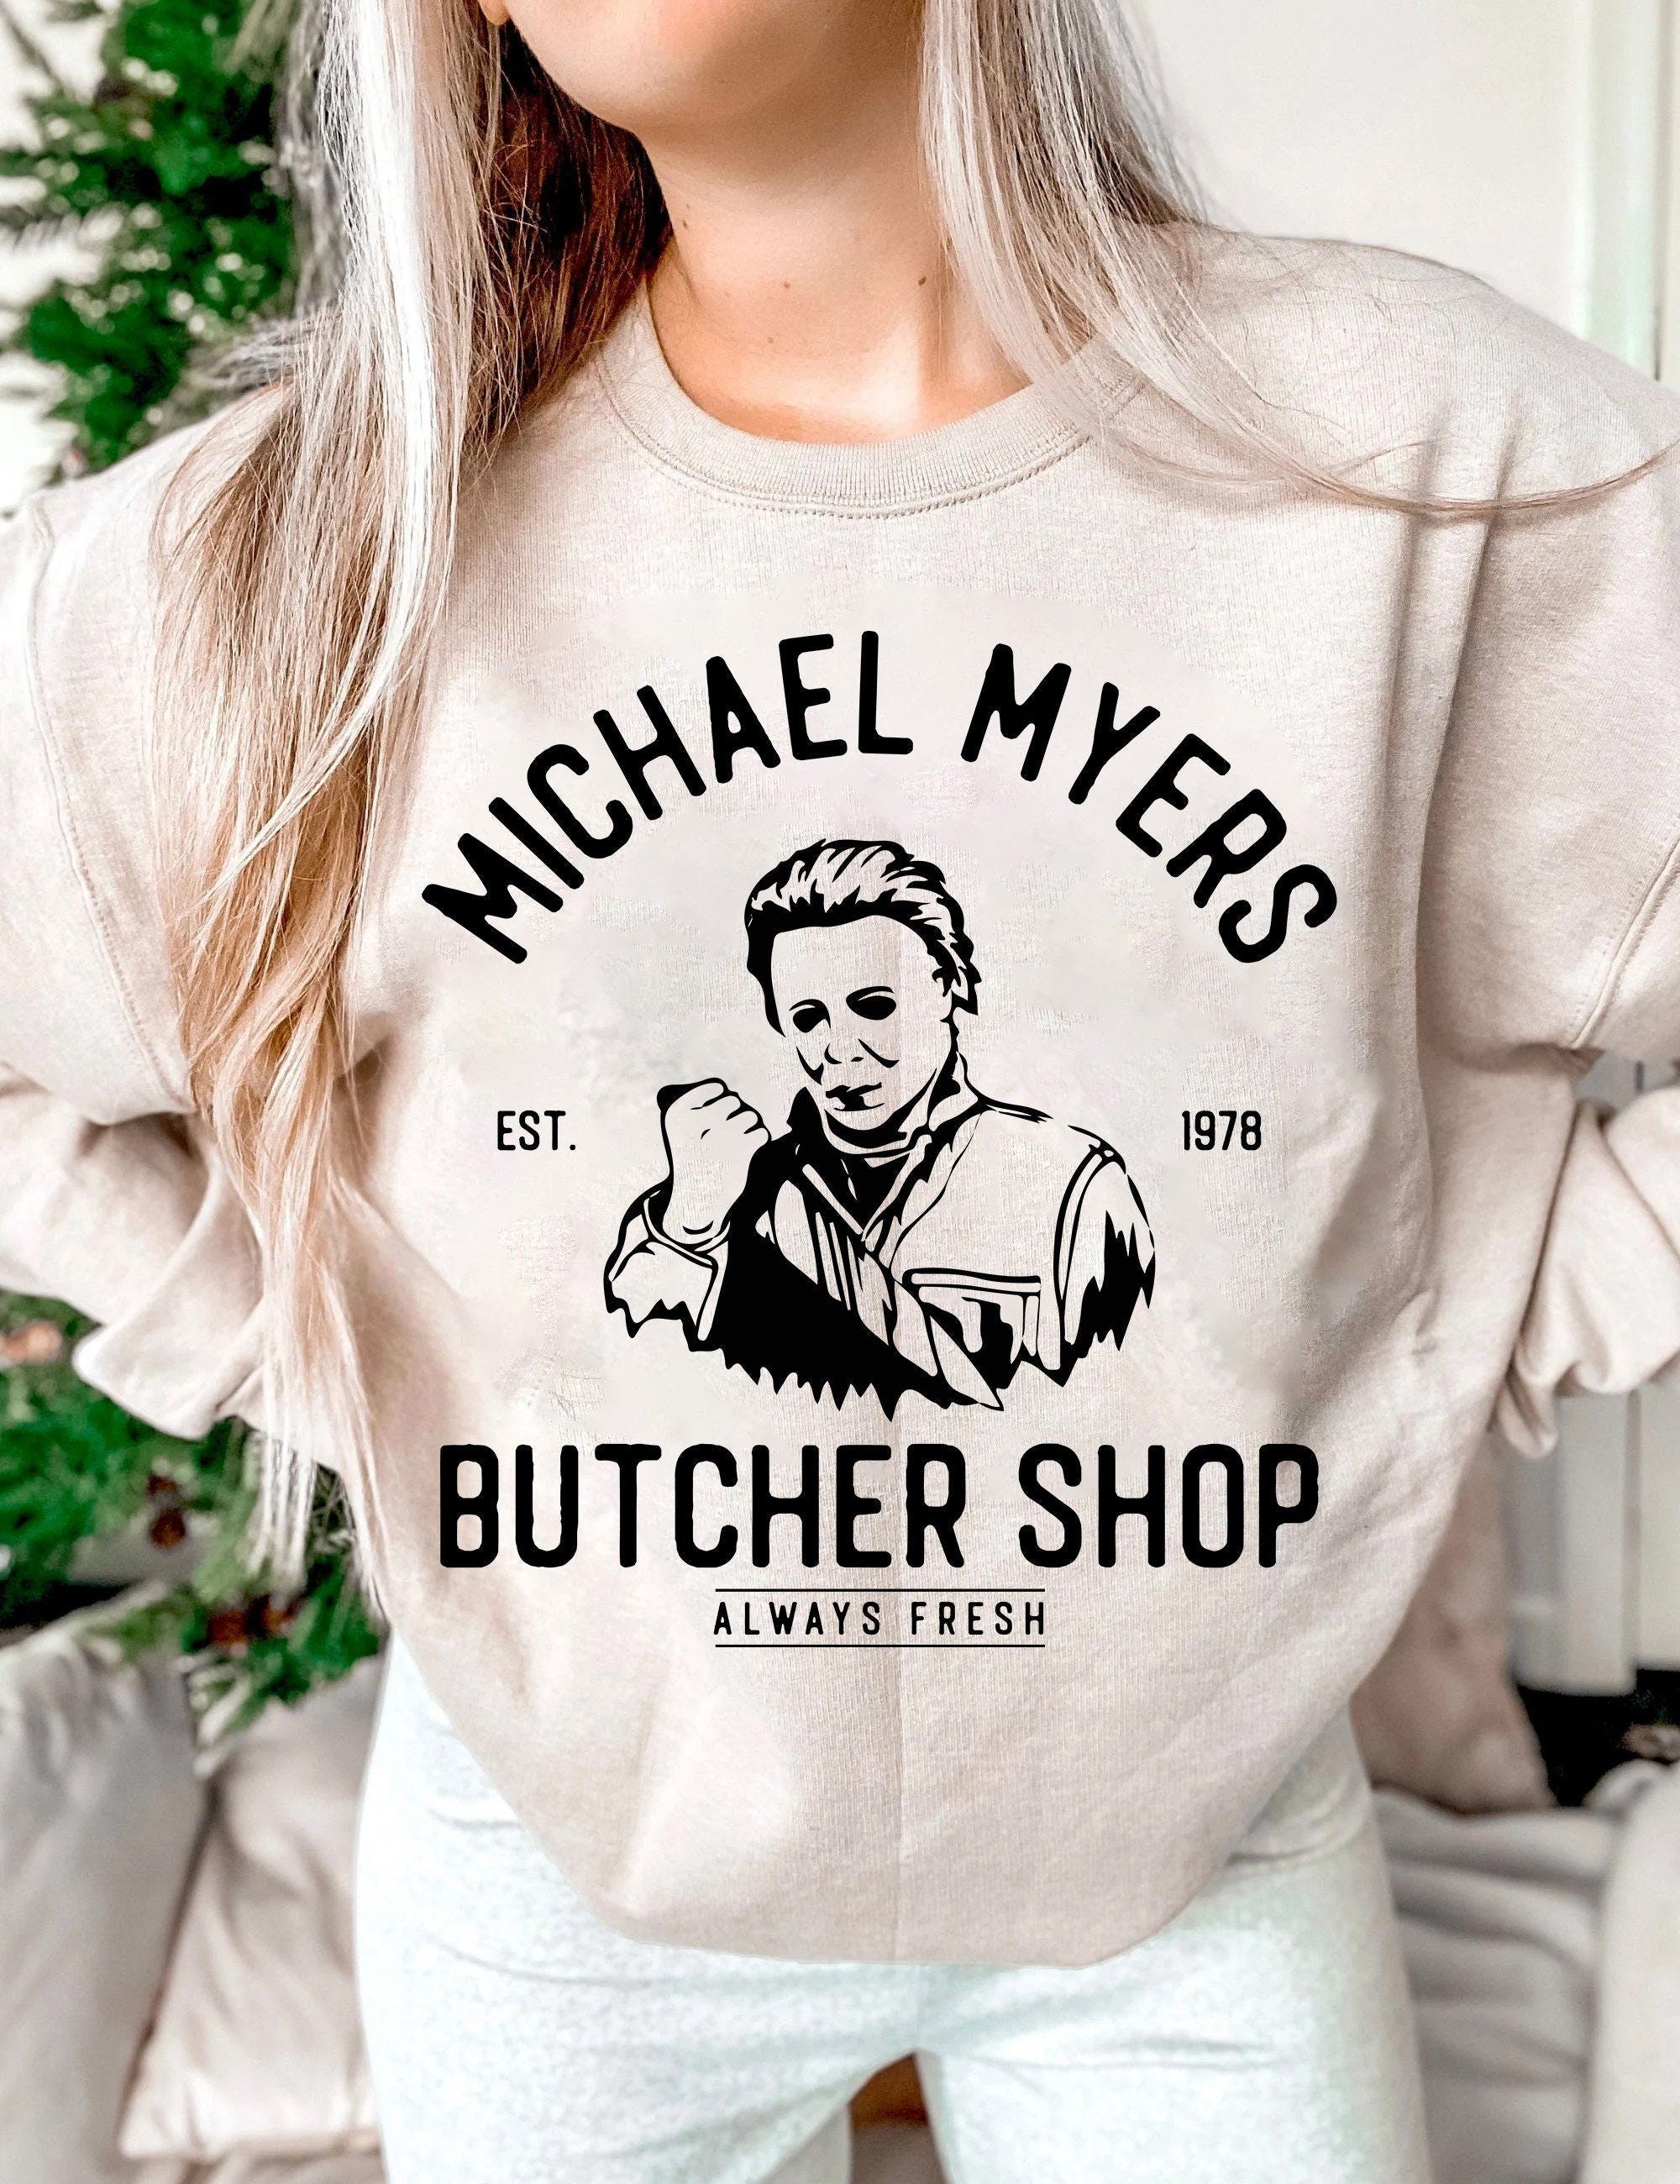 Michael Myerss Butcher Shop Svg, Michael Myerss Svg, Out Here Killin It Svg, Halloween Svg, Horror Movie Svg, Scary Movie Svg, Digital Files